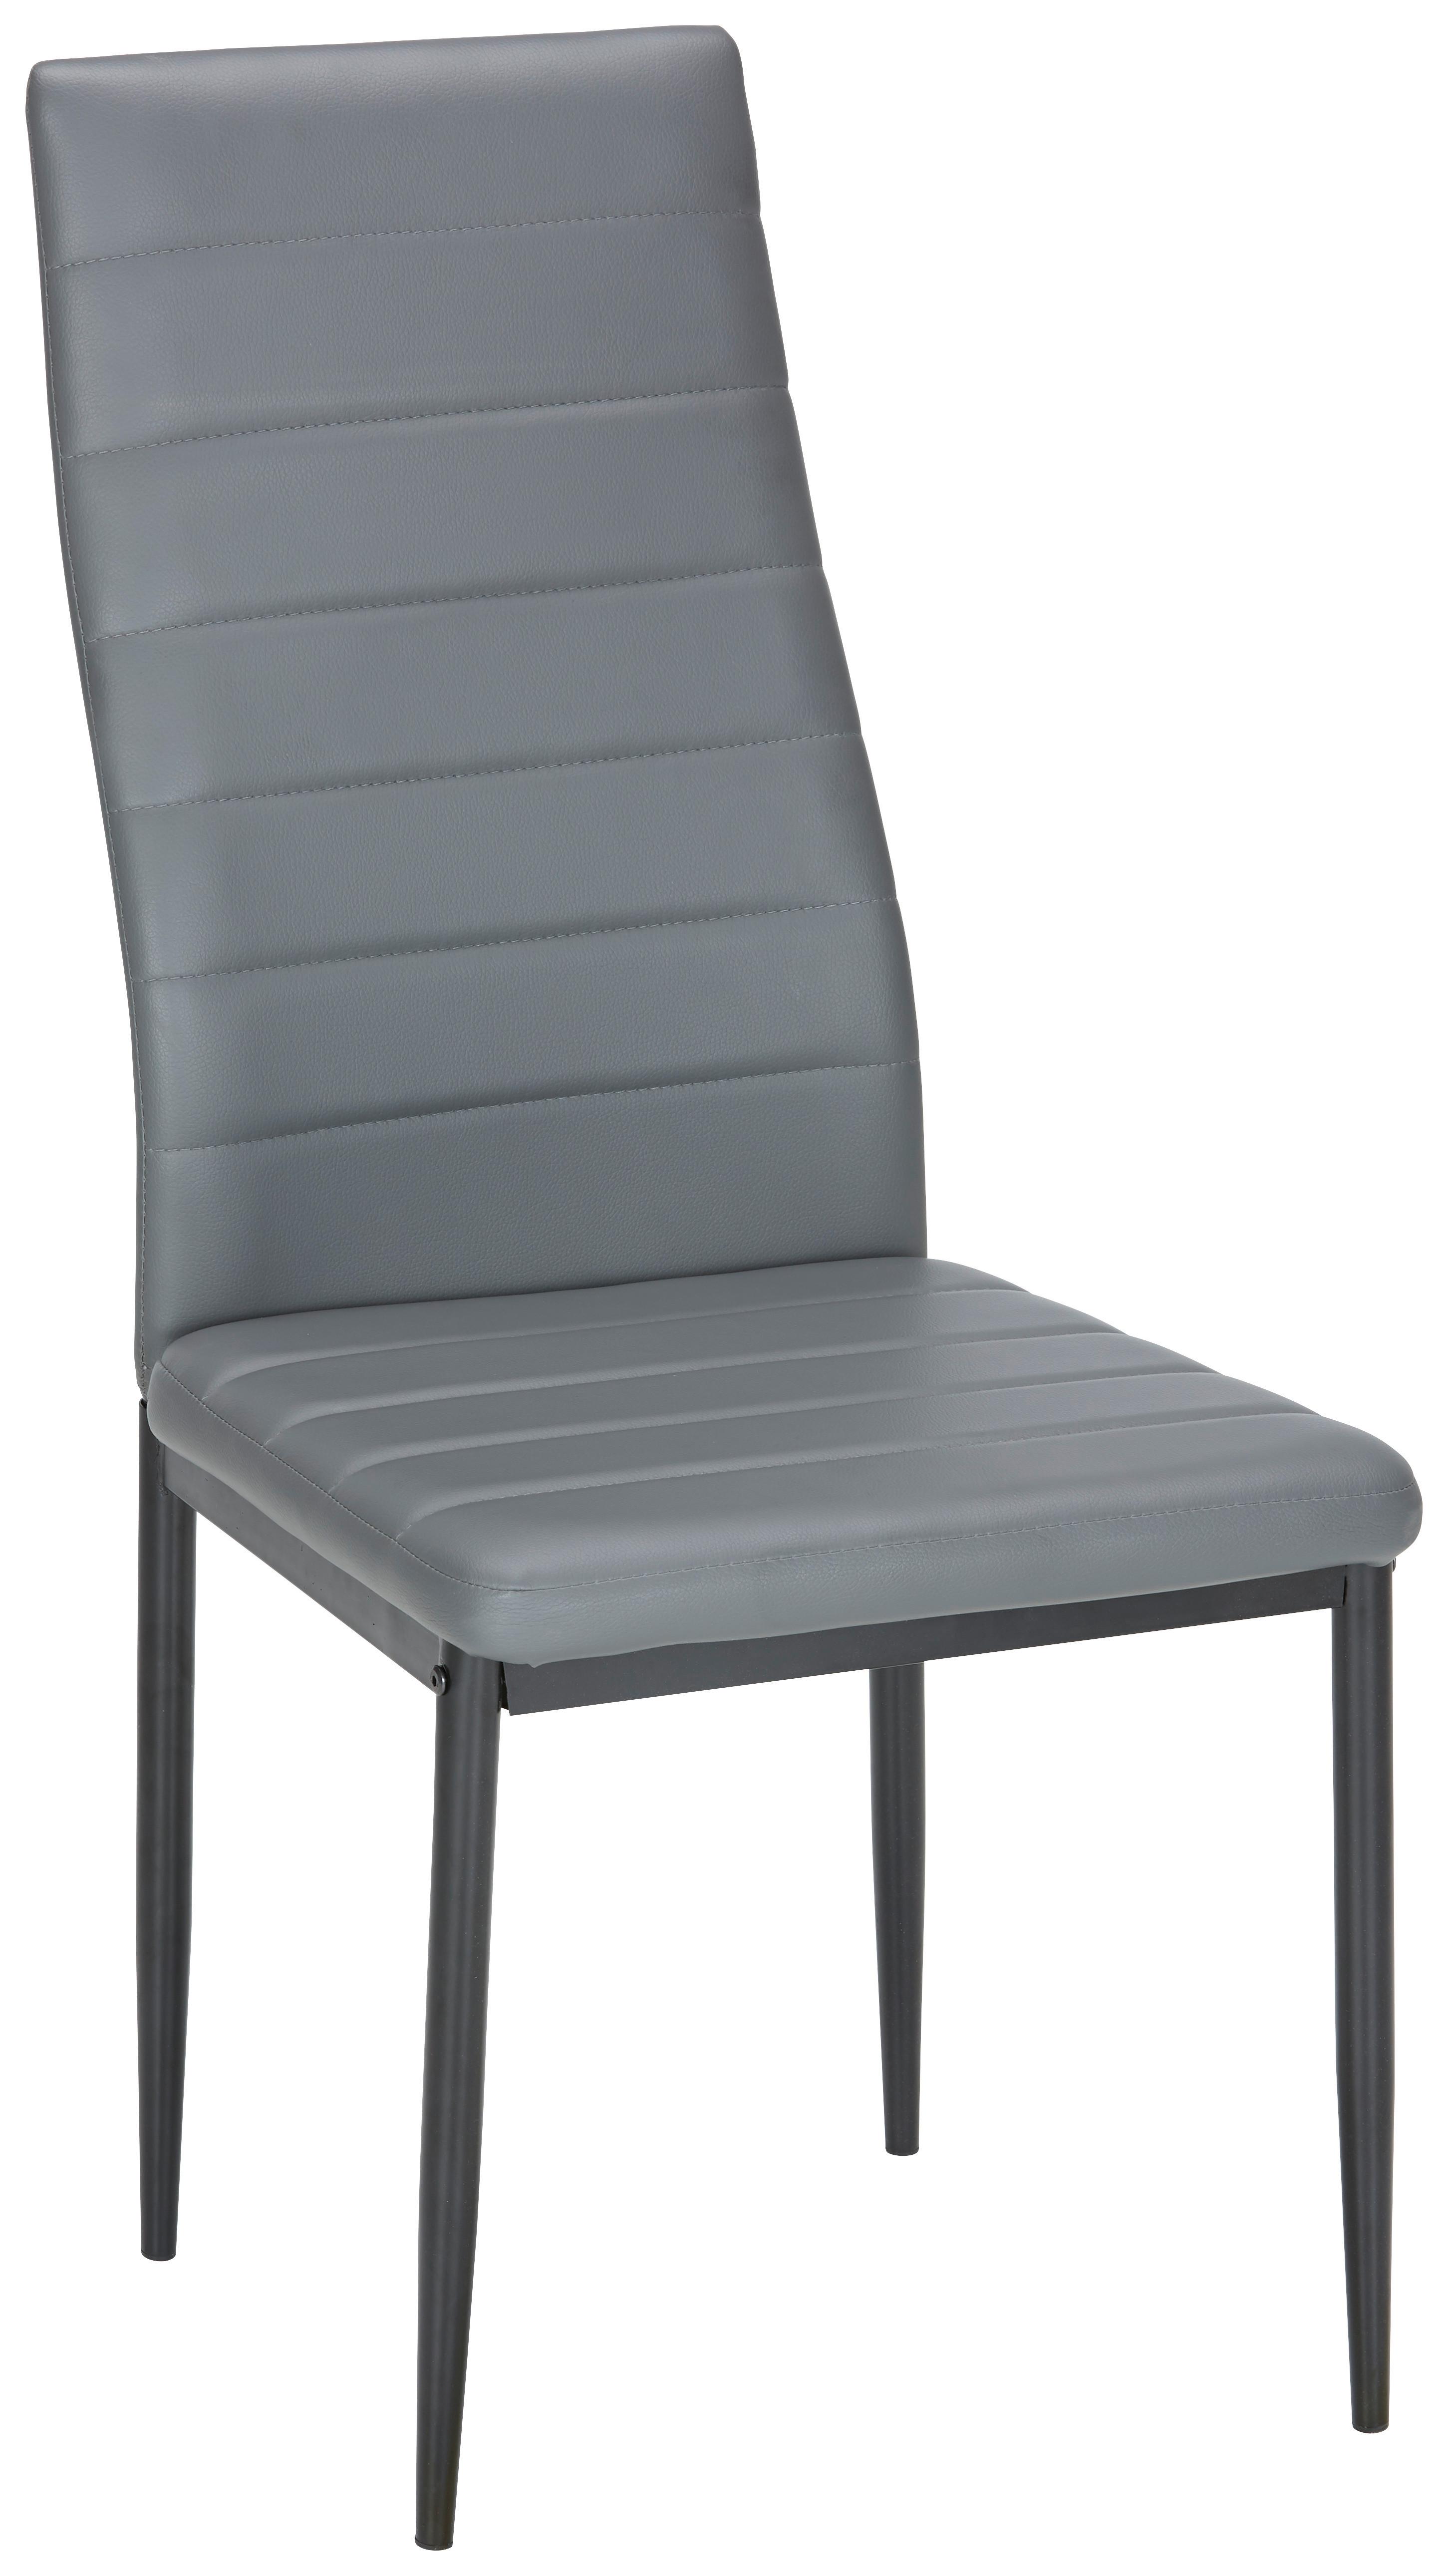 Stuhl in Grau/Schwarz - Schwarz/Grau, MODERN, Textil/Metall (42/96/54cm) - Based